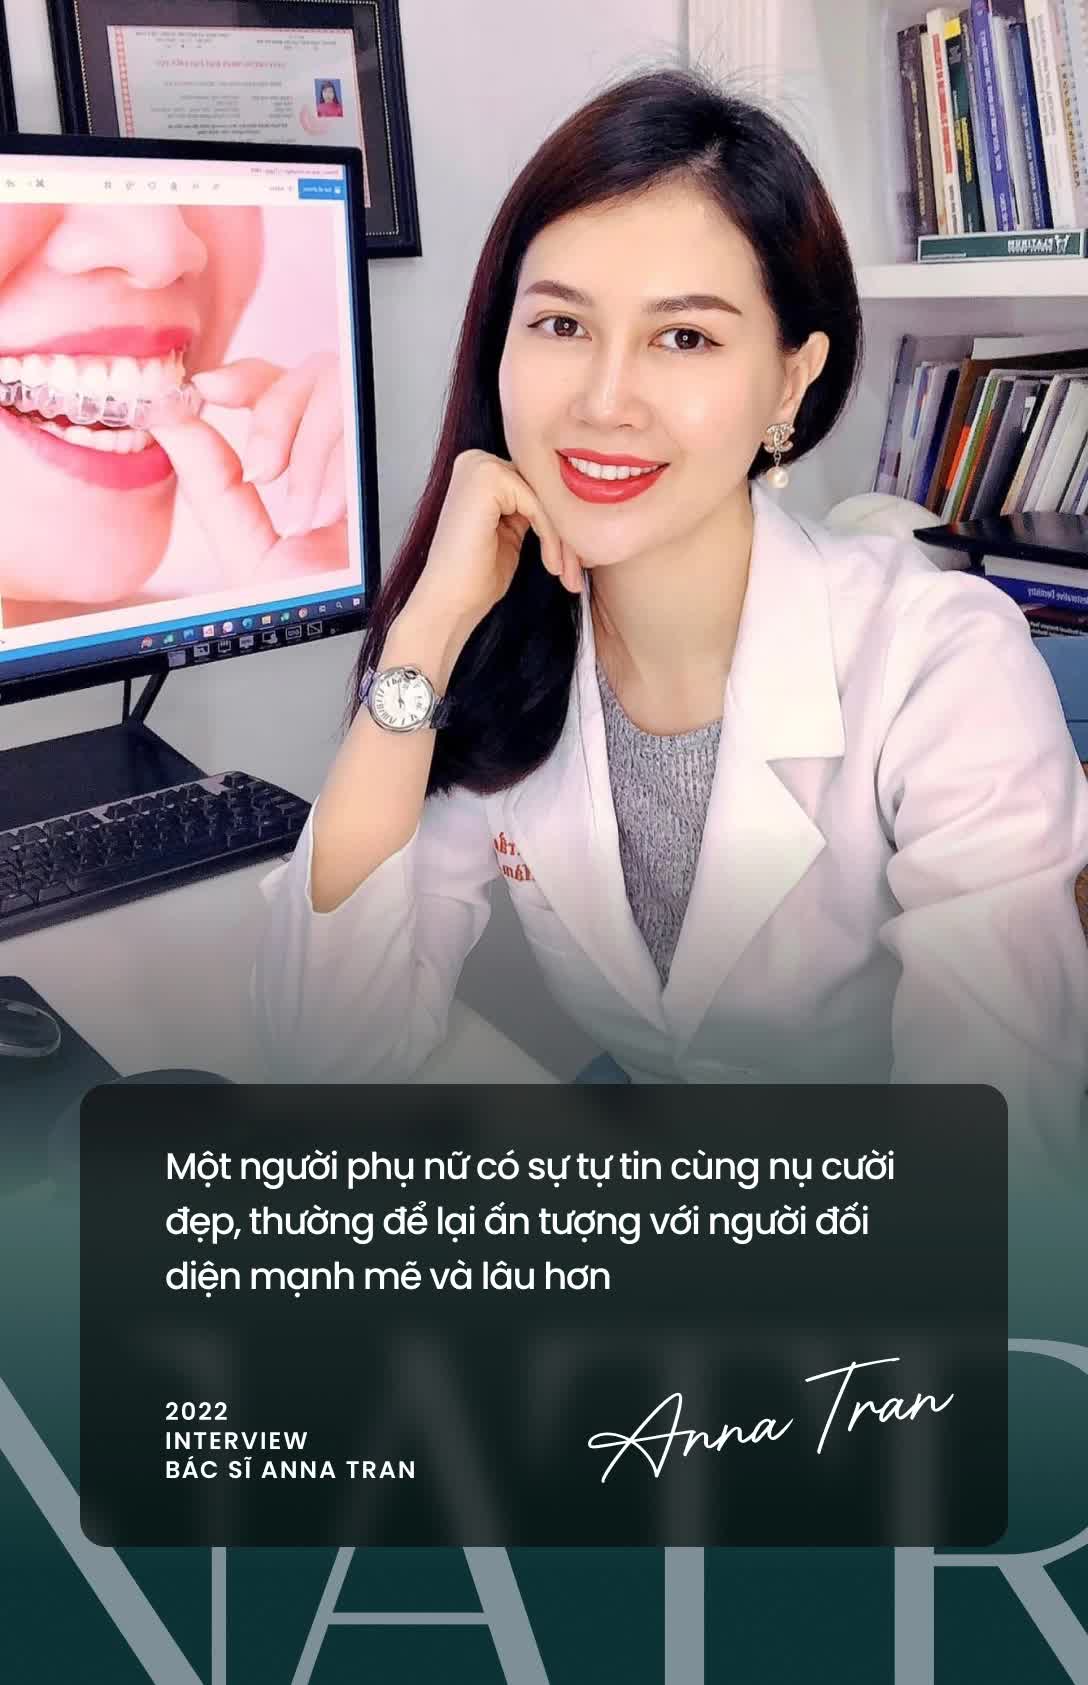 Bác sĩ Anna Trần: &quot;Nhiều người đang có xu hướng &quot;tìm lại nụ cười&quot; dù đã có ngoại hình đẹp&quot; - Ảnh 1.